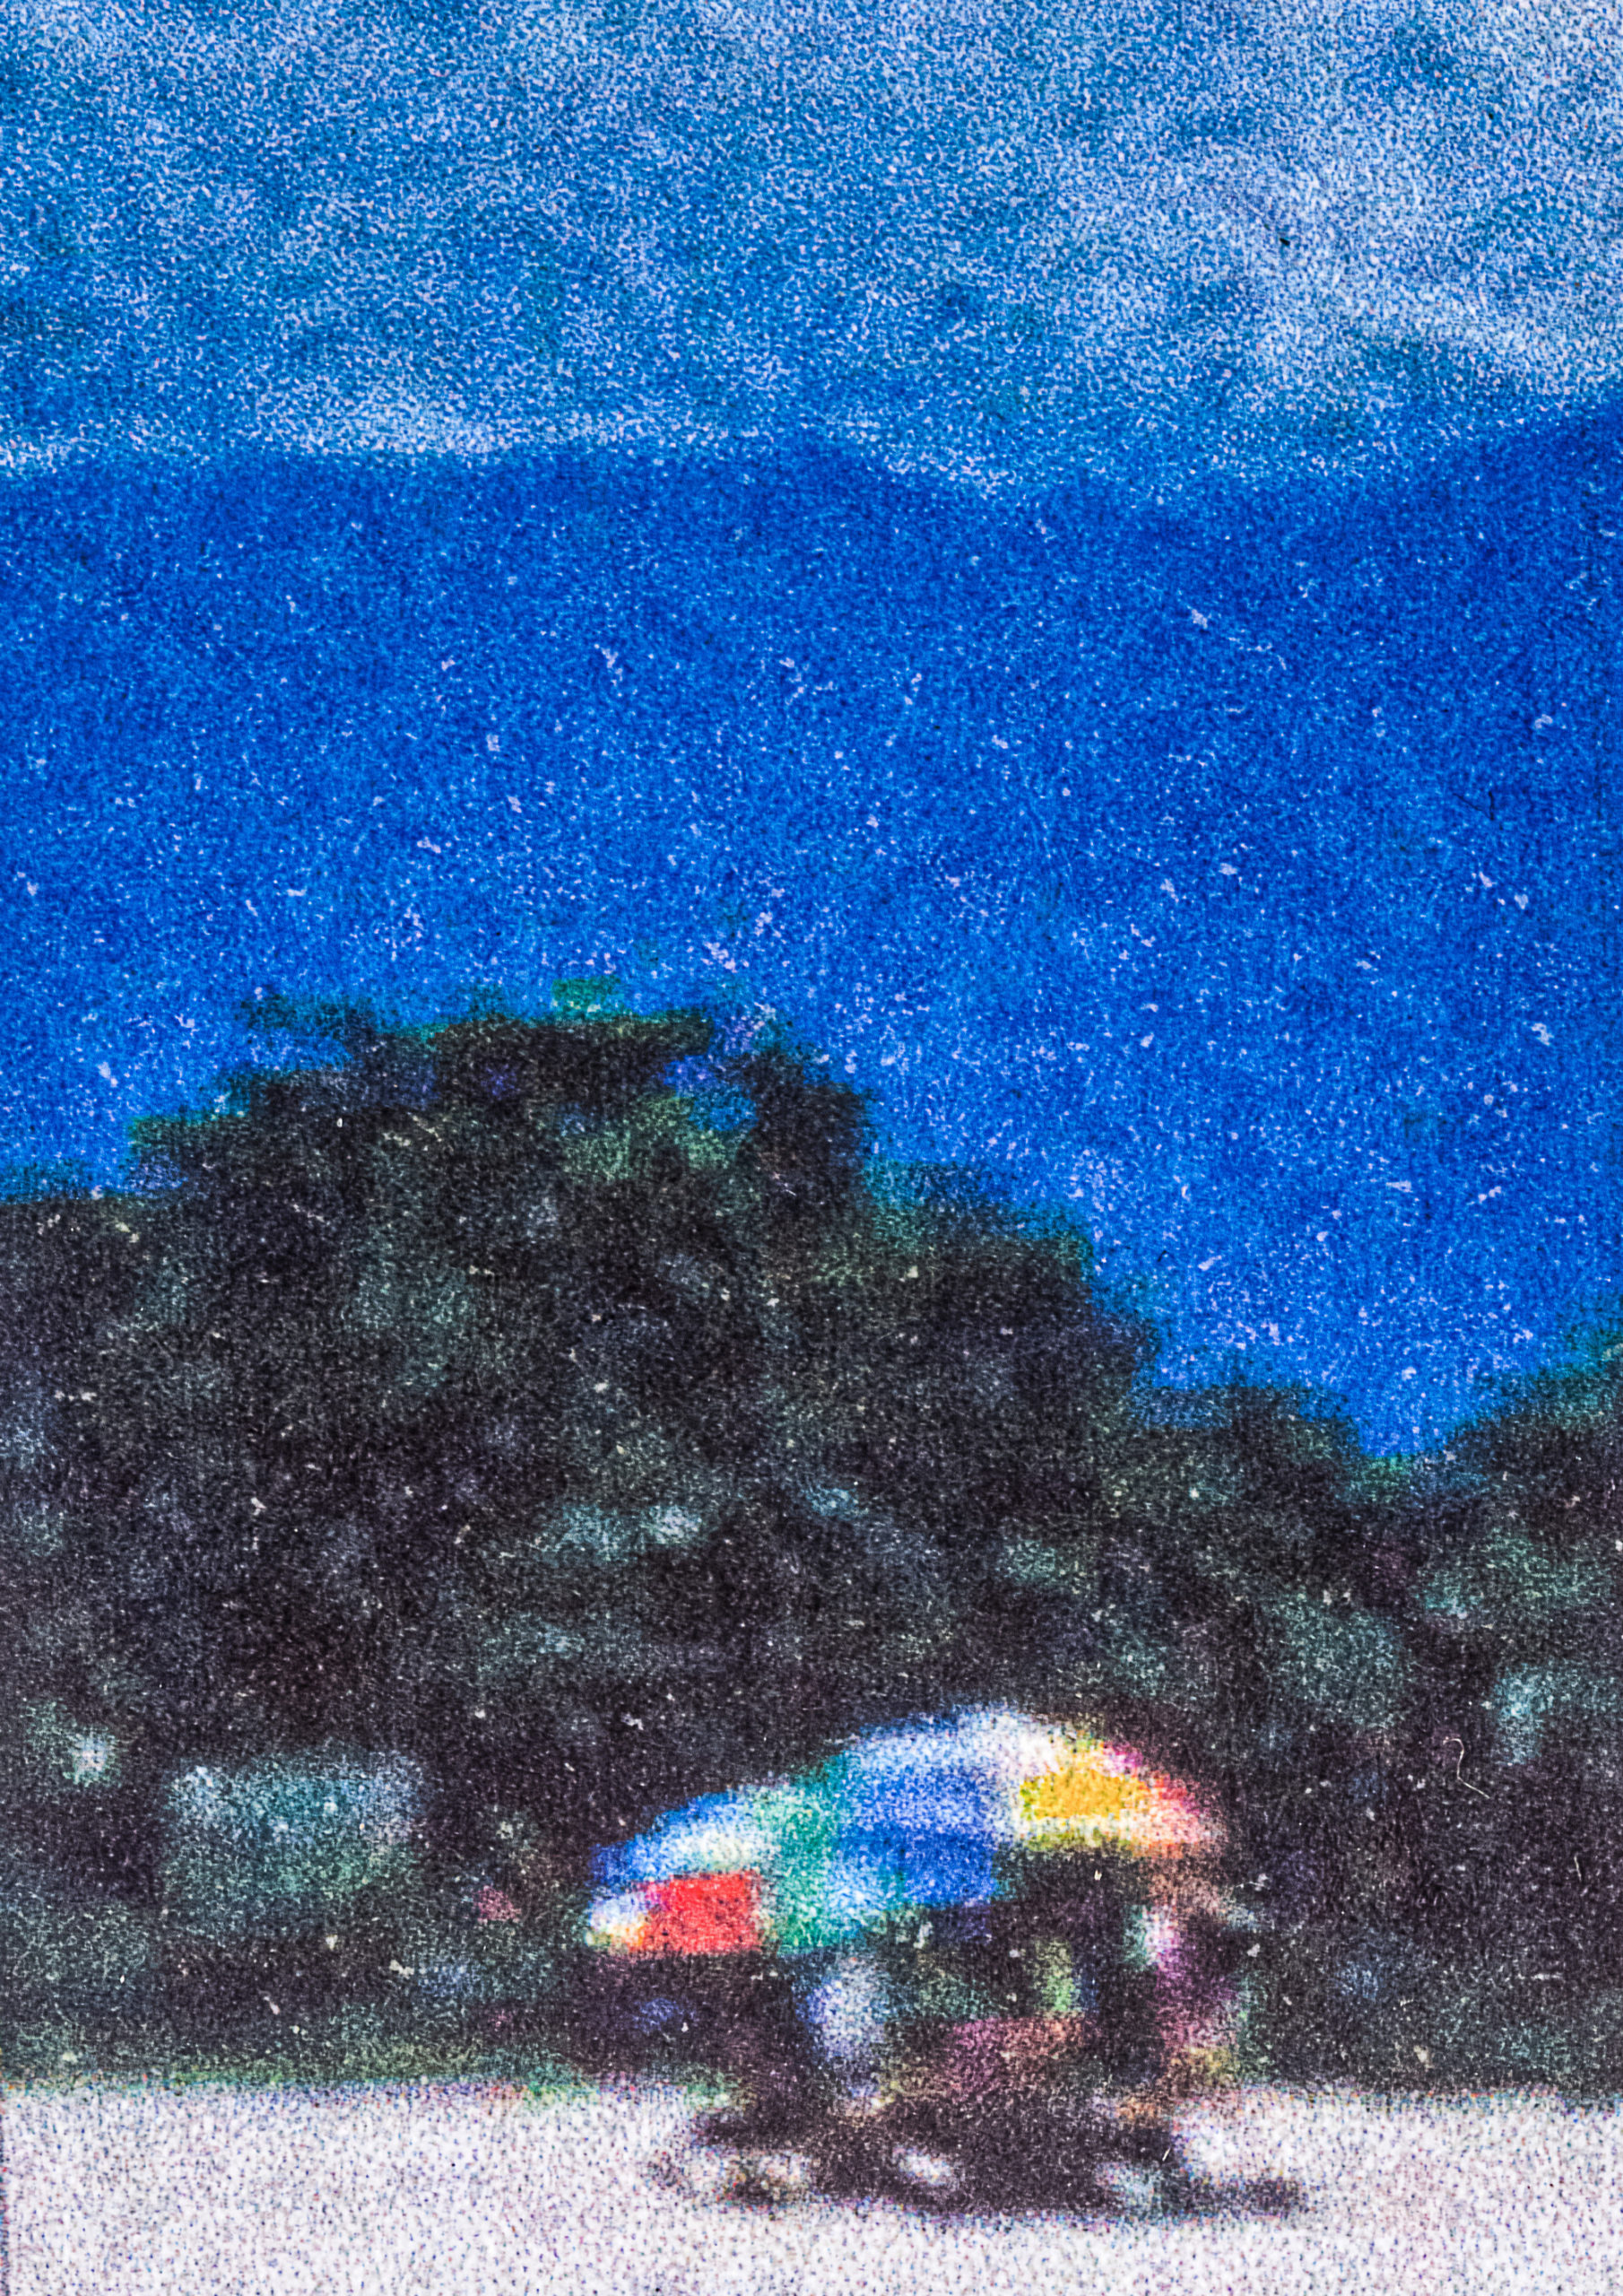 Banhistas com guarda-sol colorido em uma fotografia pontilhada.